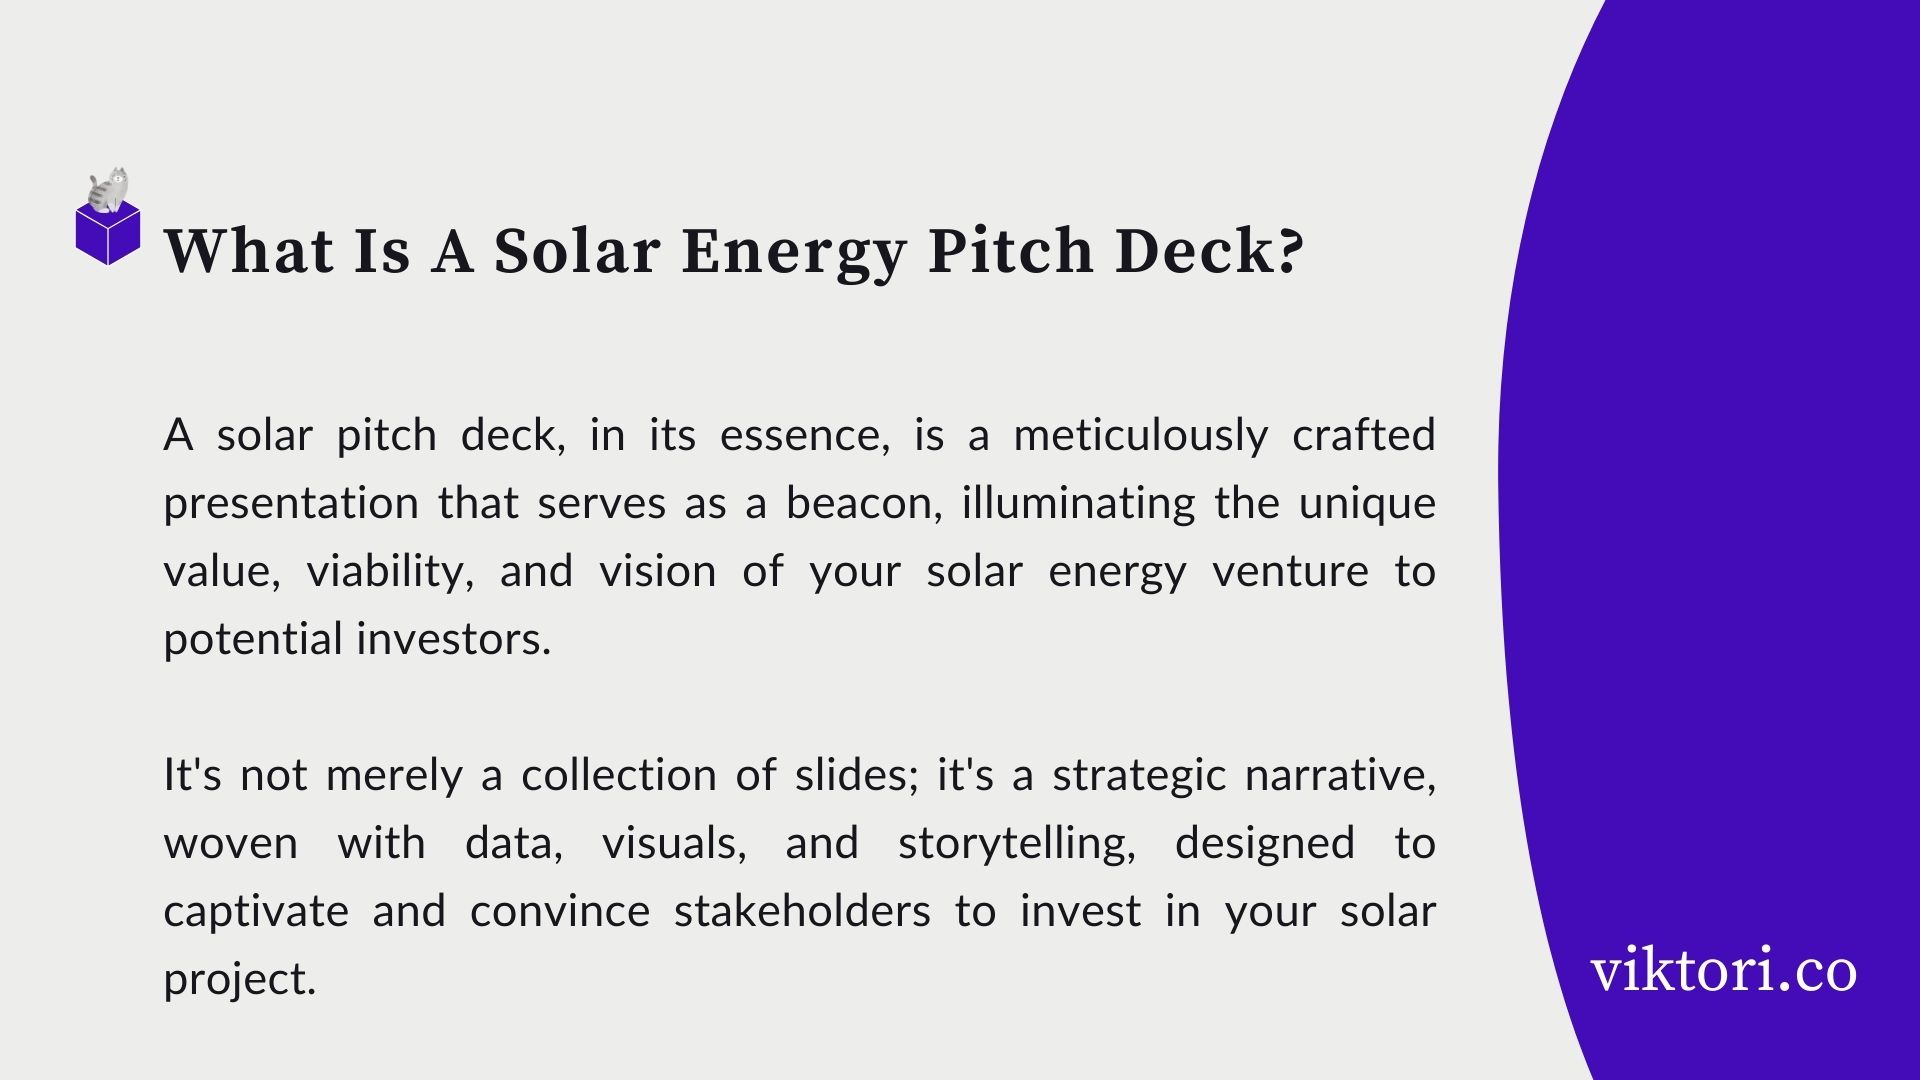 solar pitch deck definition